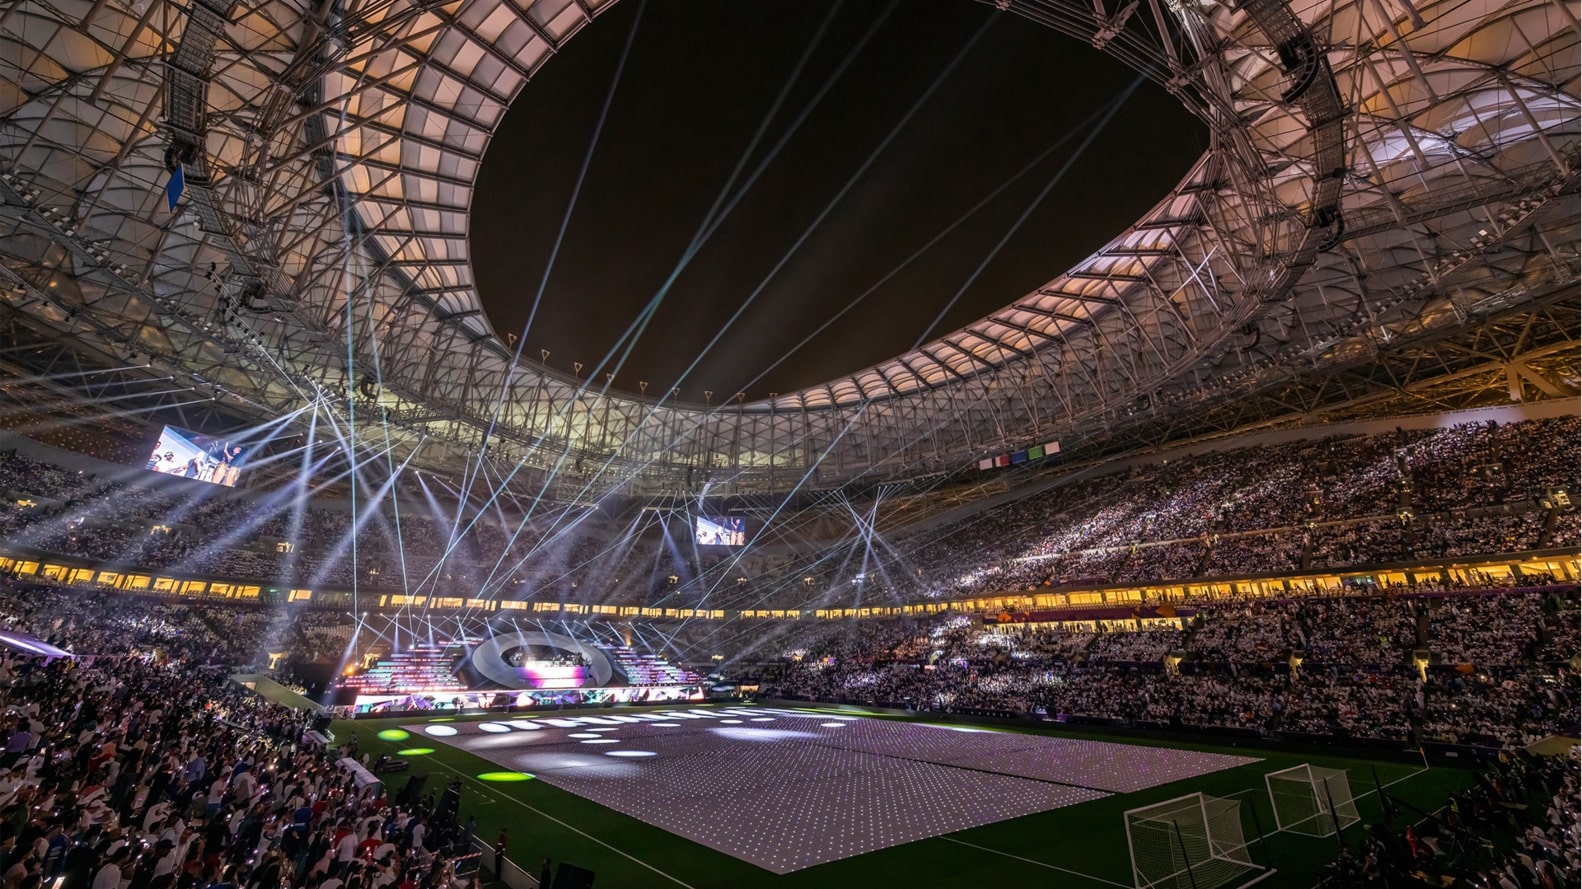 Các SVĐ World Cup 2022 ở Qatar được làm mát như thế nào?